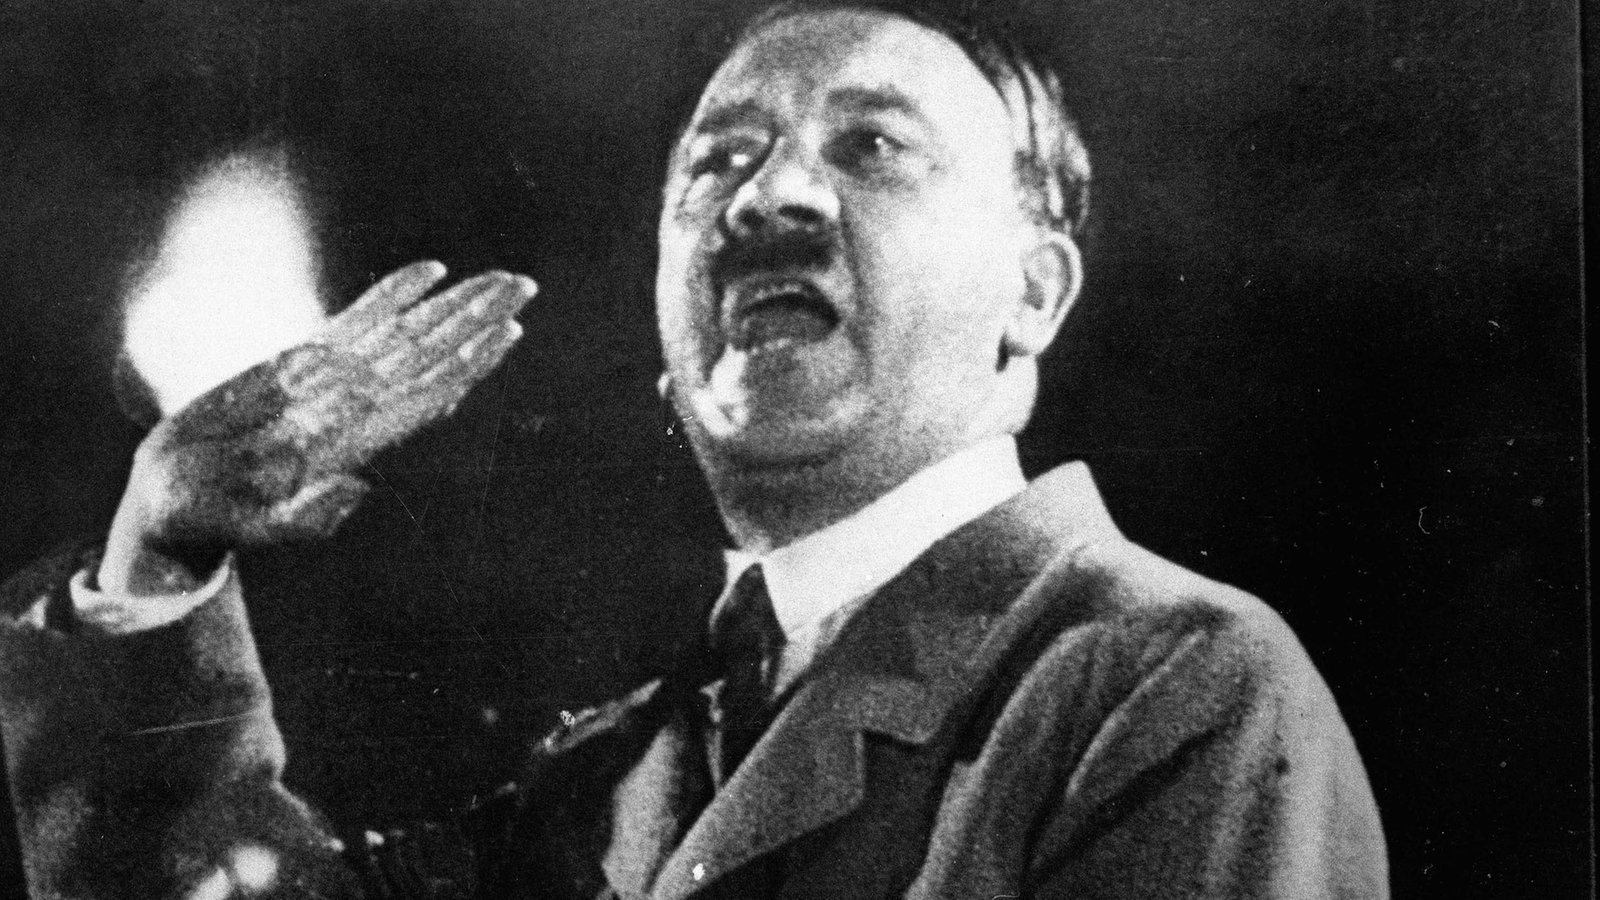 Wann starb Hitler? Die Fakten und Hintergründe zum Tod